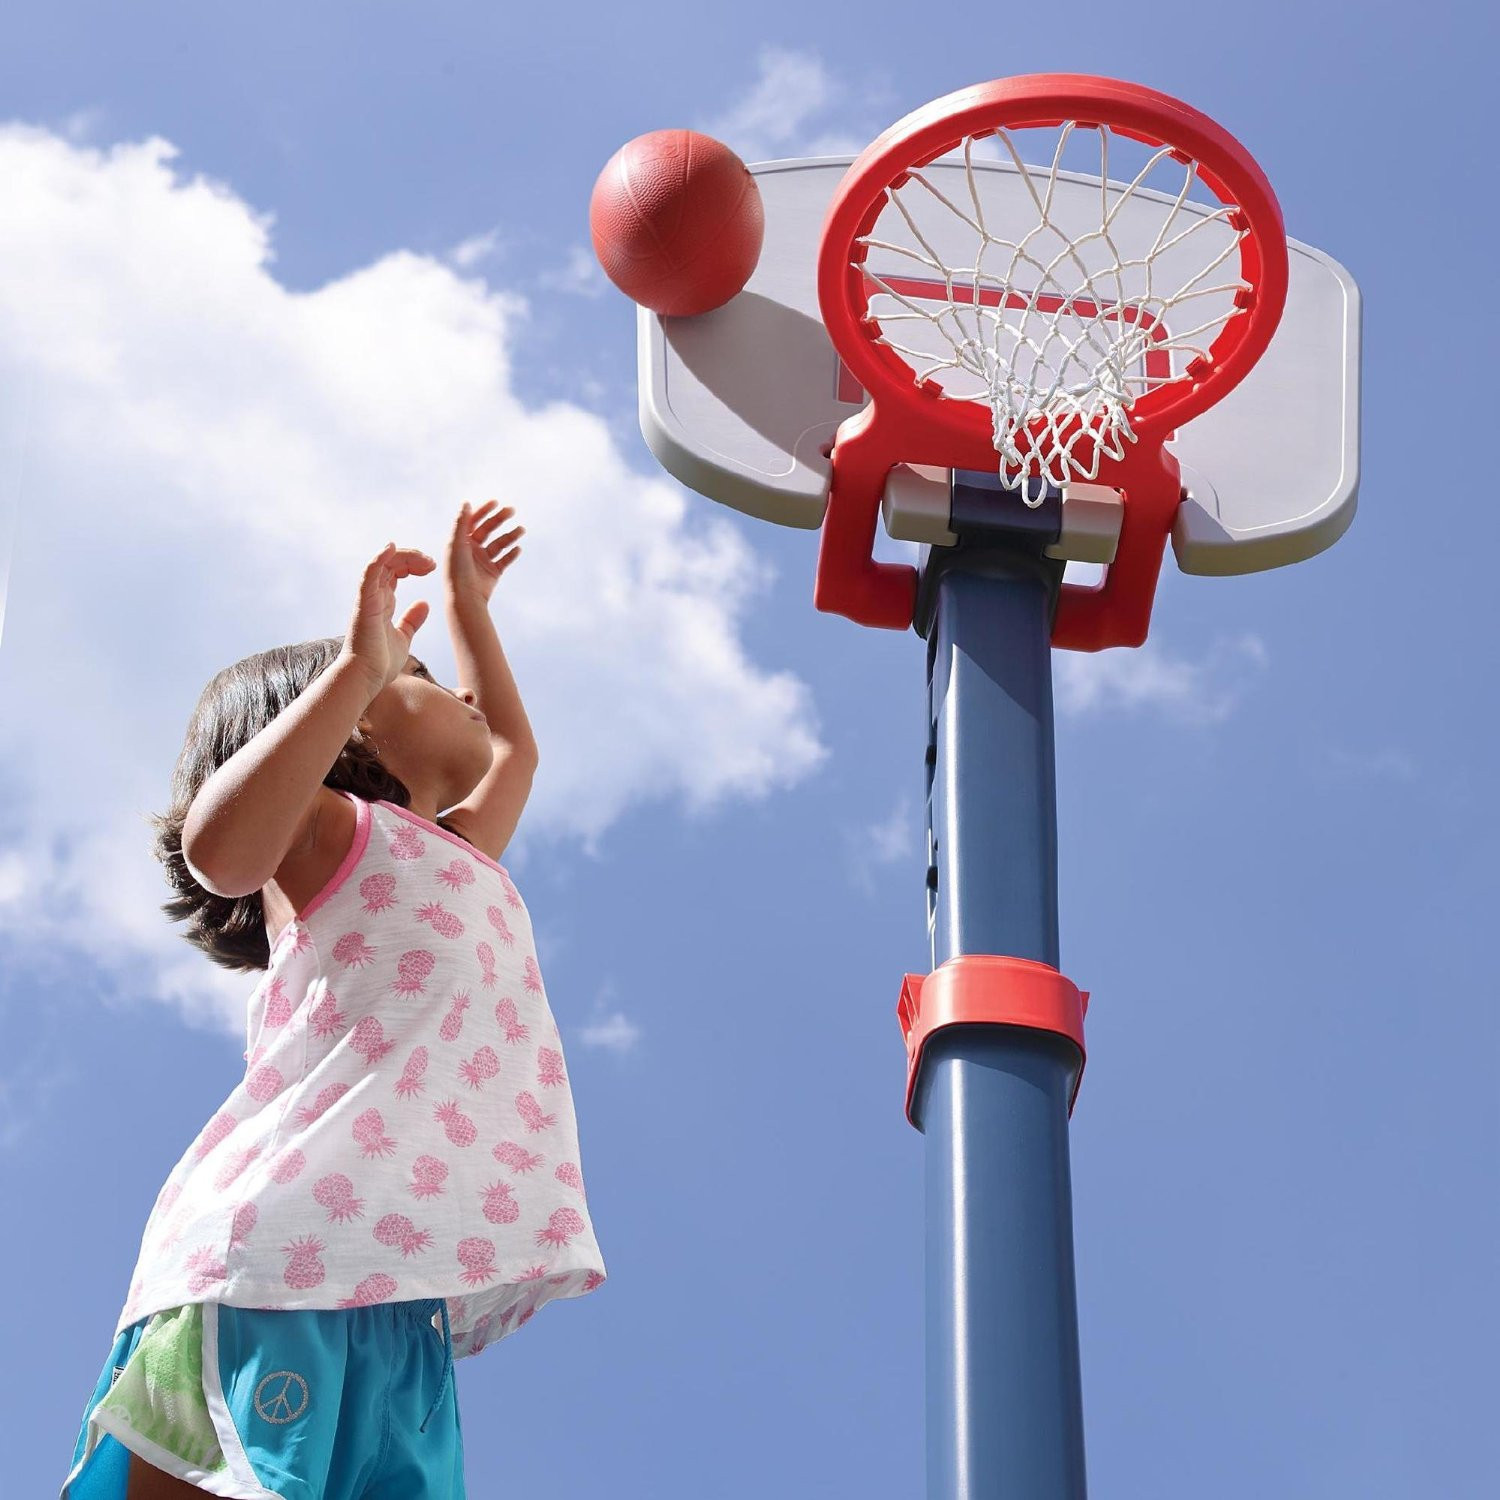 Kids Indoor Basketball
 Buy Adjustable Basketball Hoop For Kids Indoor Outdoor